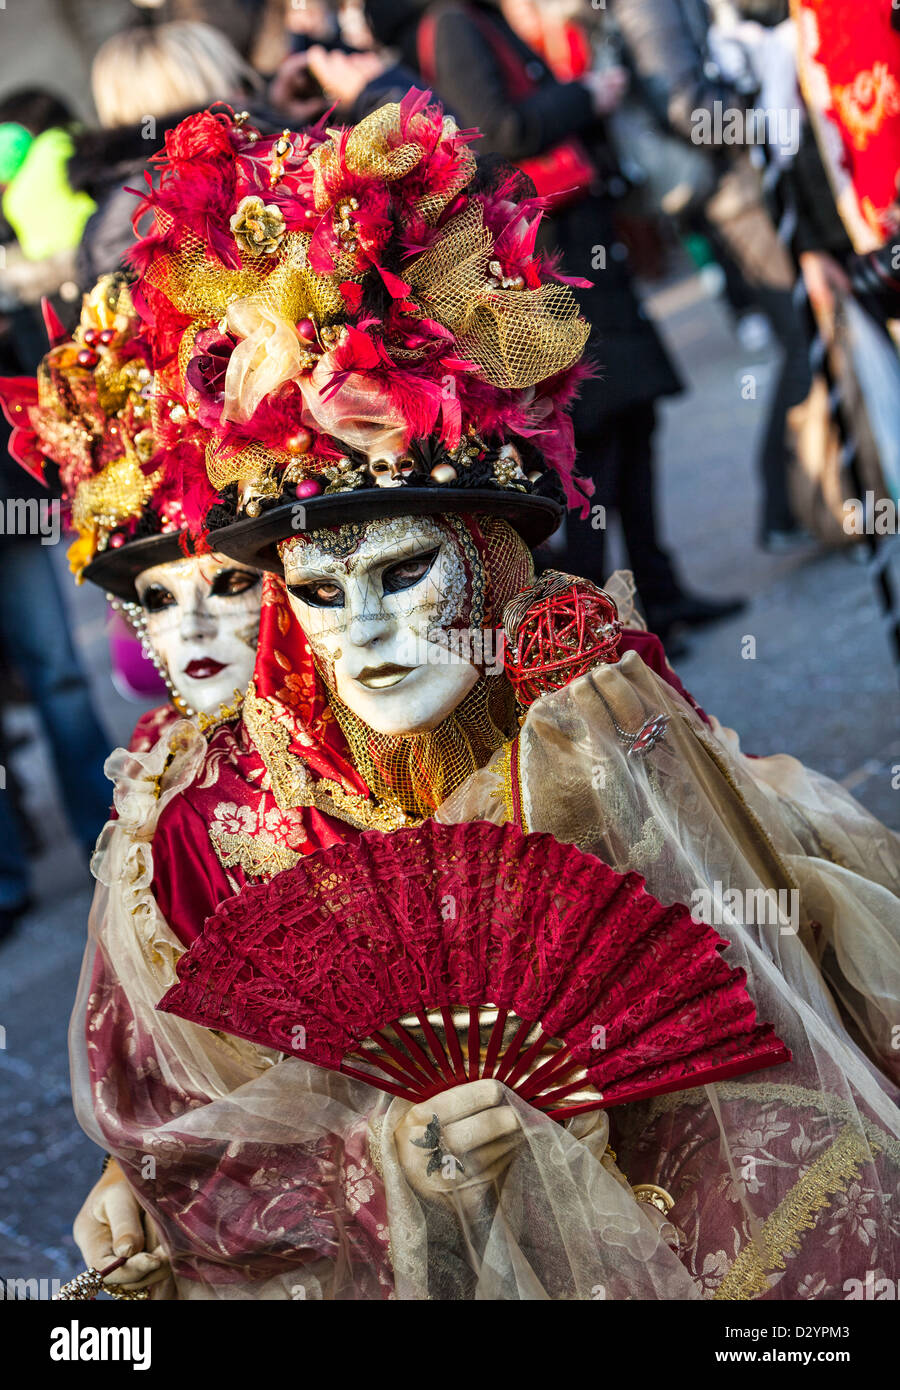 Ein paar traditionelle Masken und Kostüme tragen durchführen eine Liebesszene in Piazza San Marco in Venedig Karneval Tagen. Stockfoto